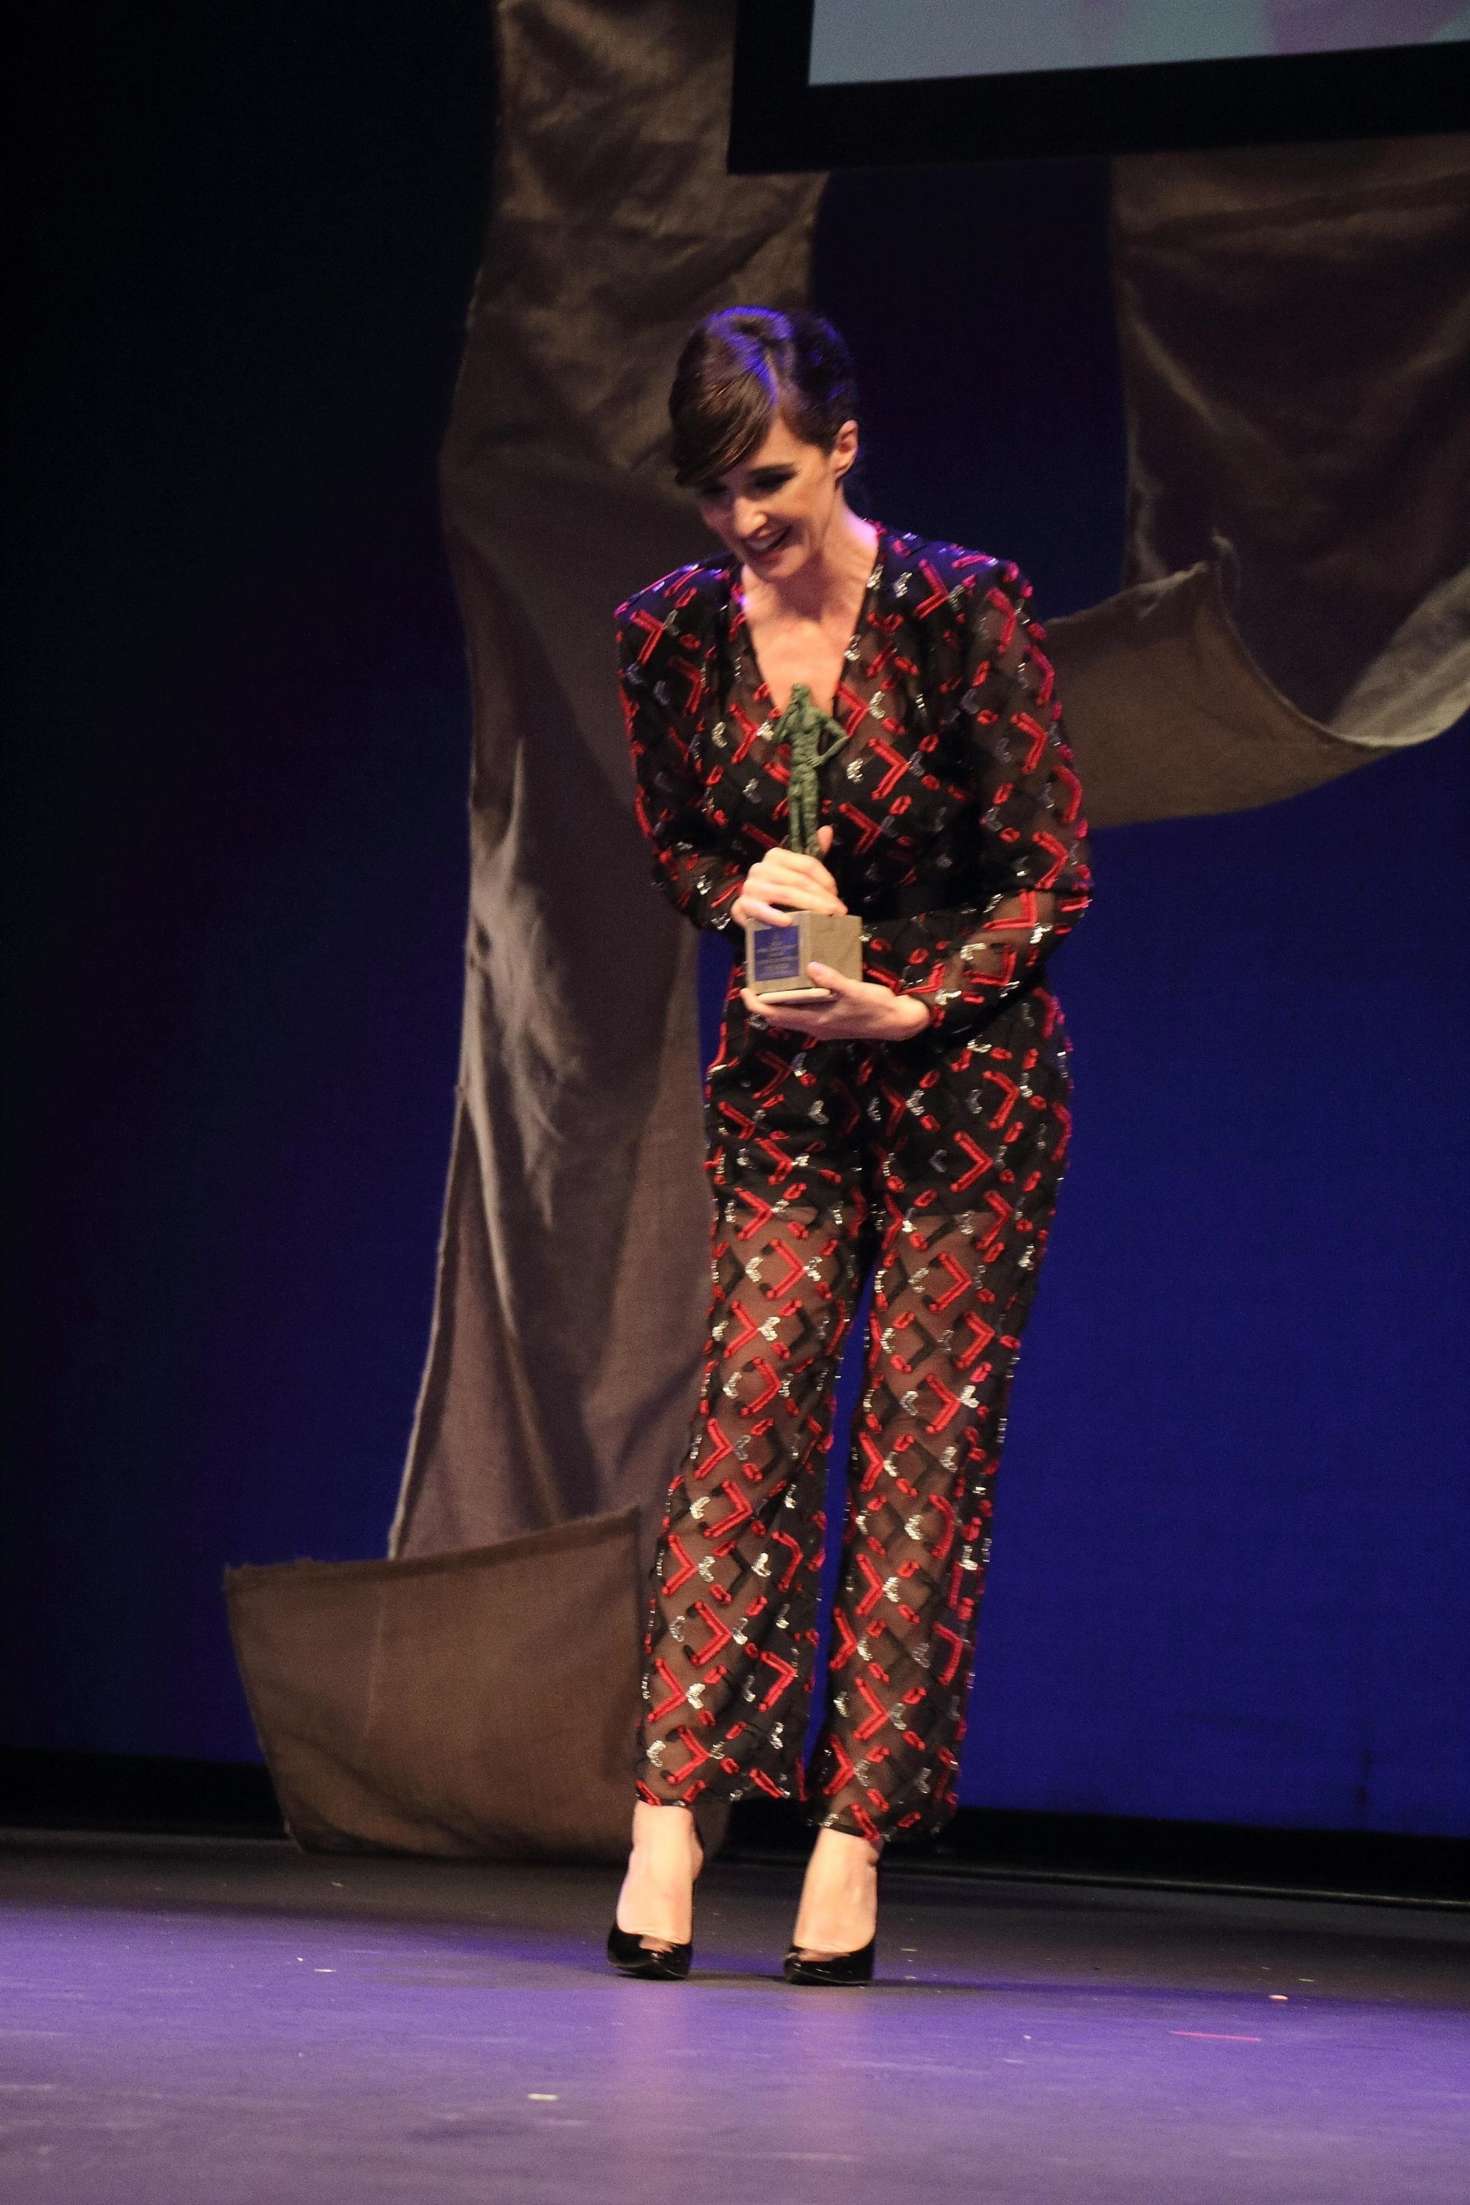 Paz Vega â€“ Wins an award at 2018 Seville Film Festival in in Seville